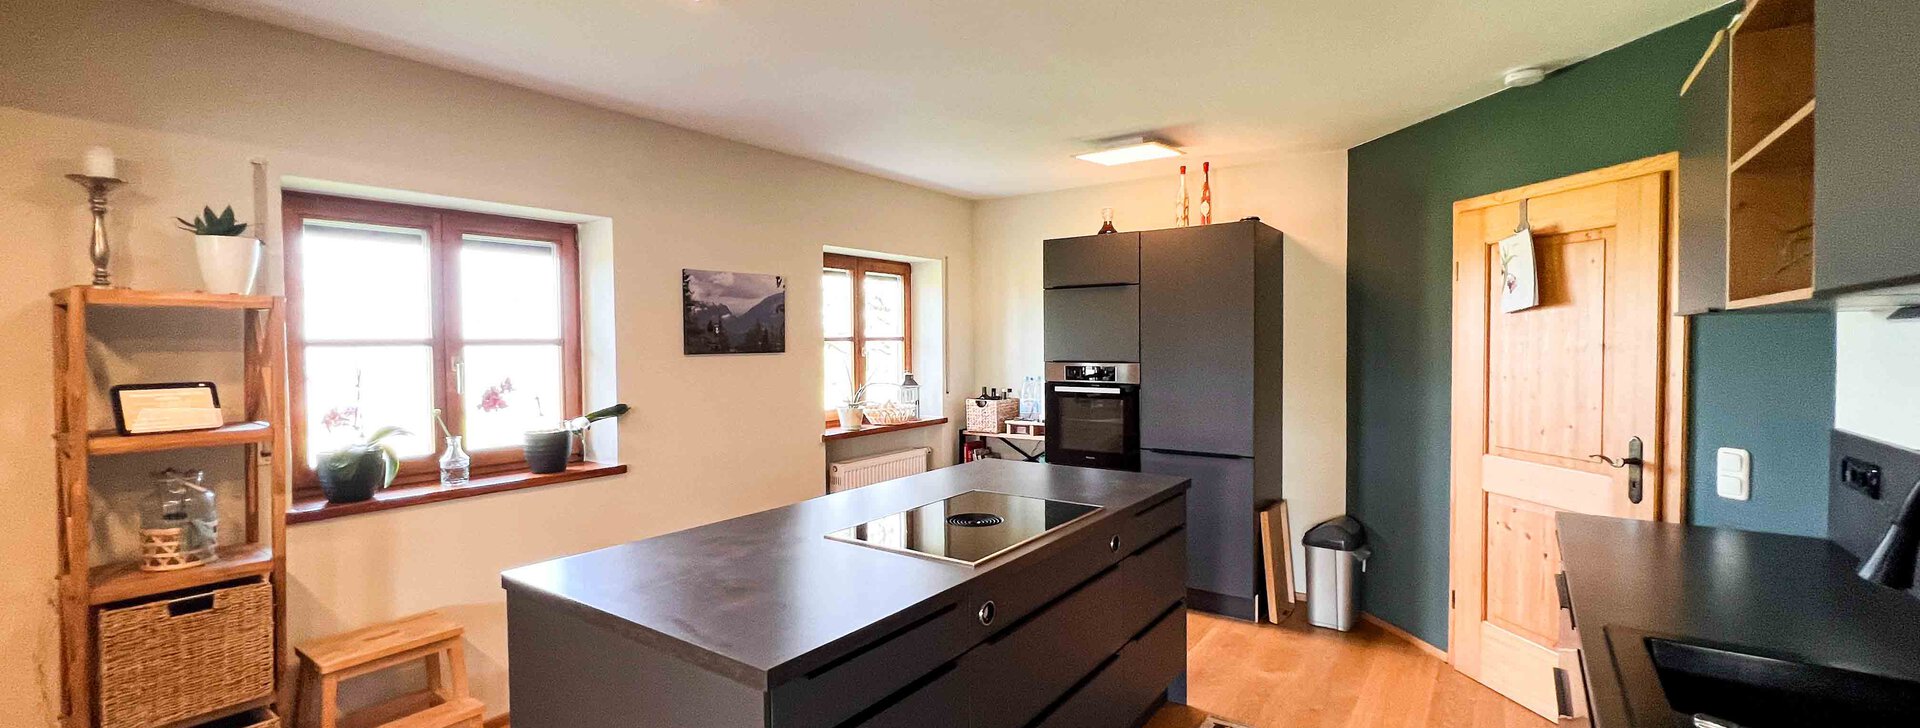 Kochbereich mit Küche, Haus mit einzigartigem Blick, Immobilie kaufen, St.Leonhard - Wonneberg  | © HausBauHaus GmbH 